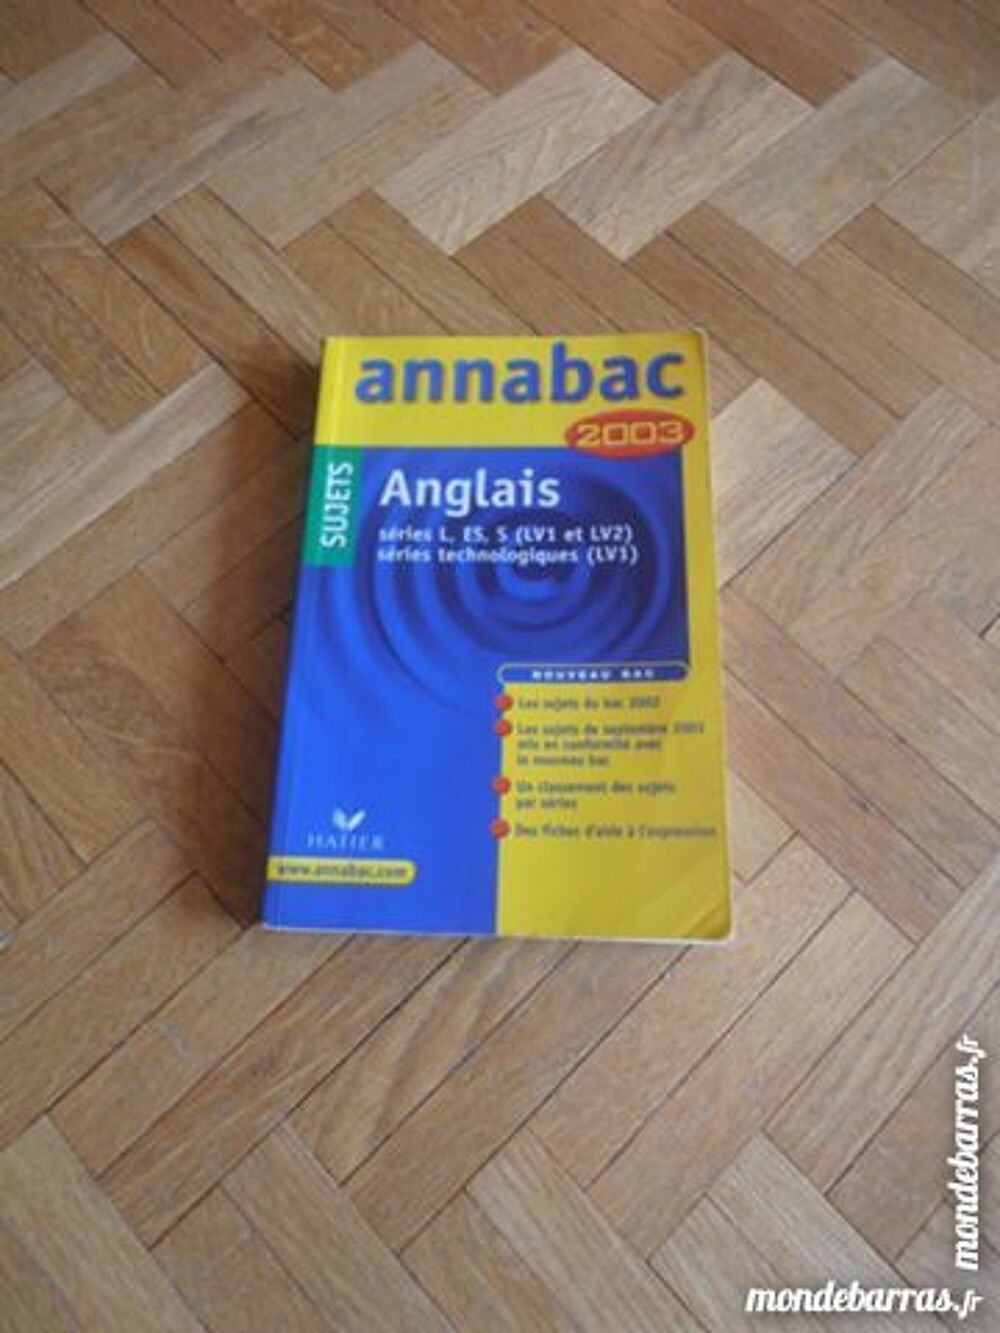 Annabac Anglais (1) Livres et BD